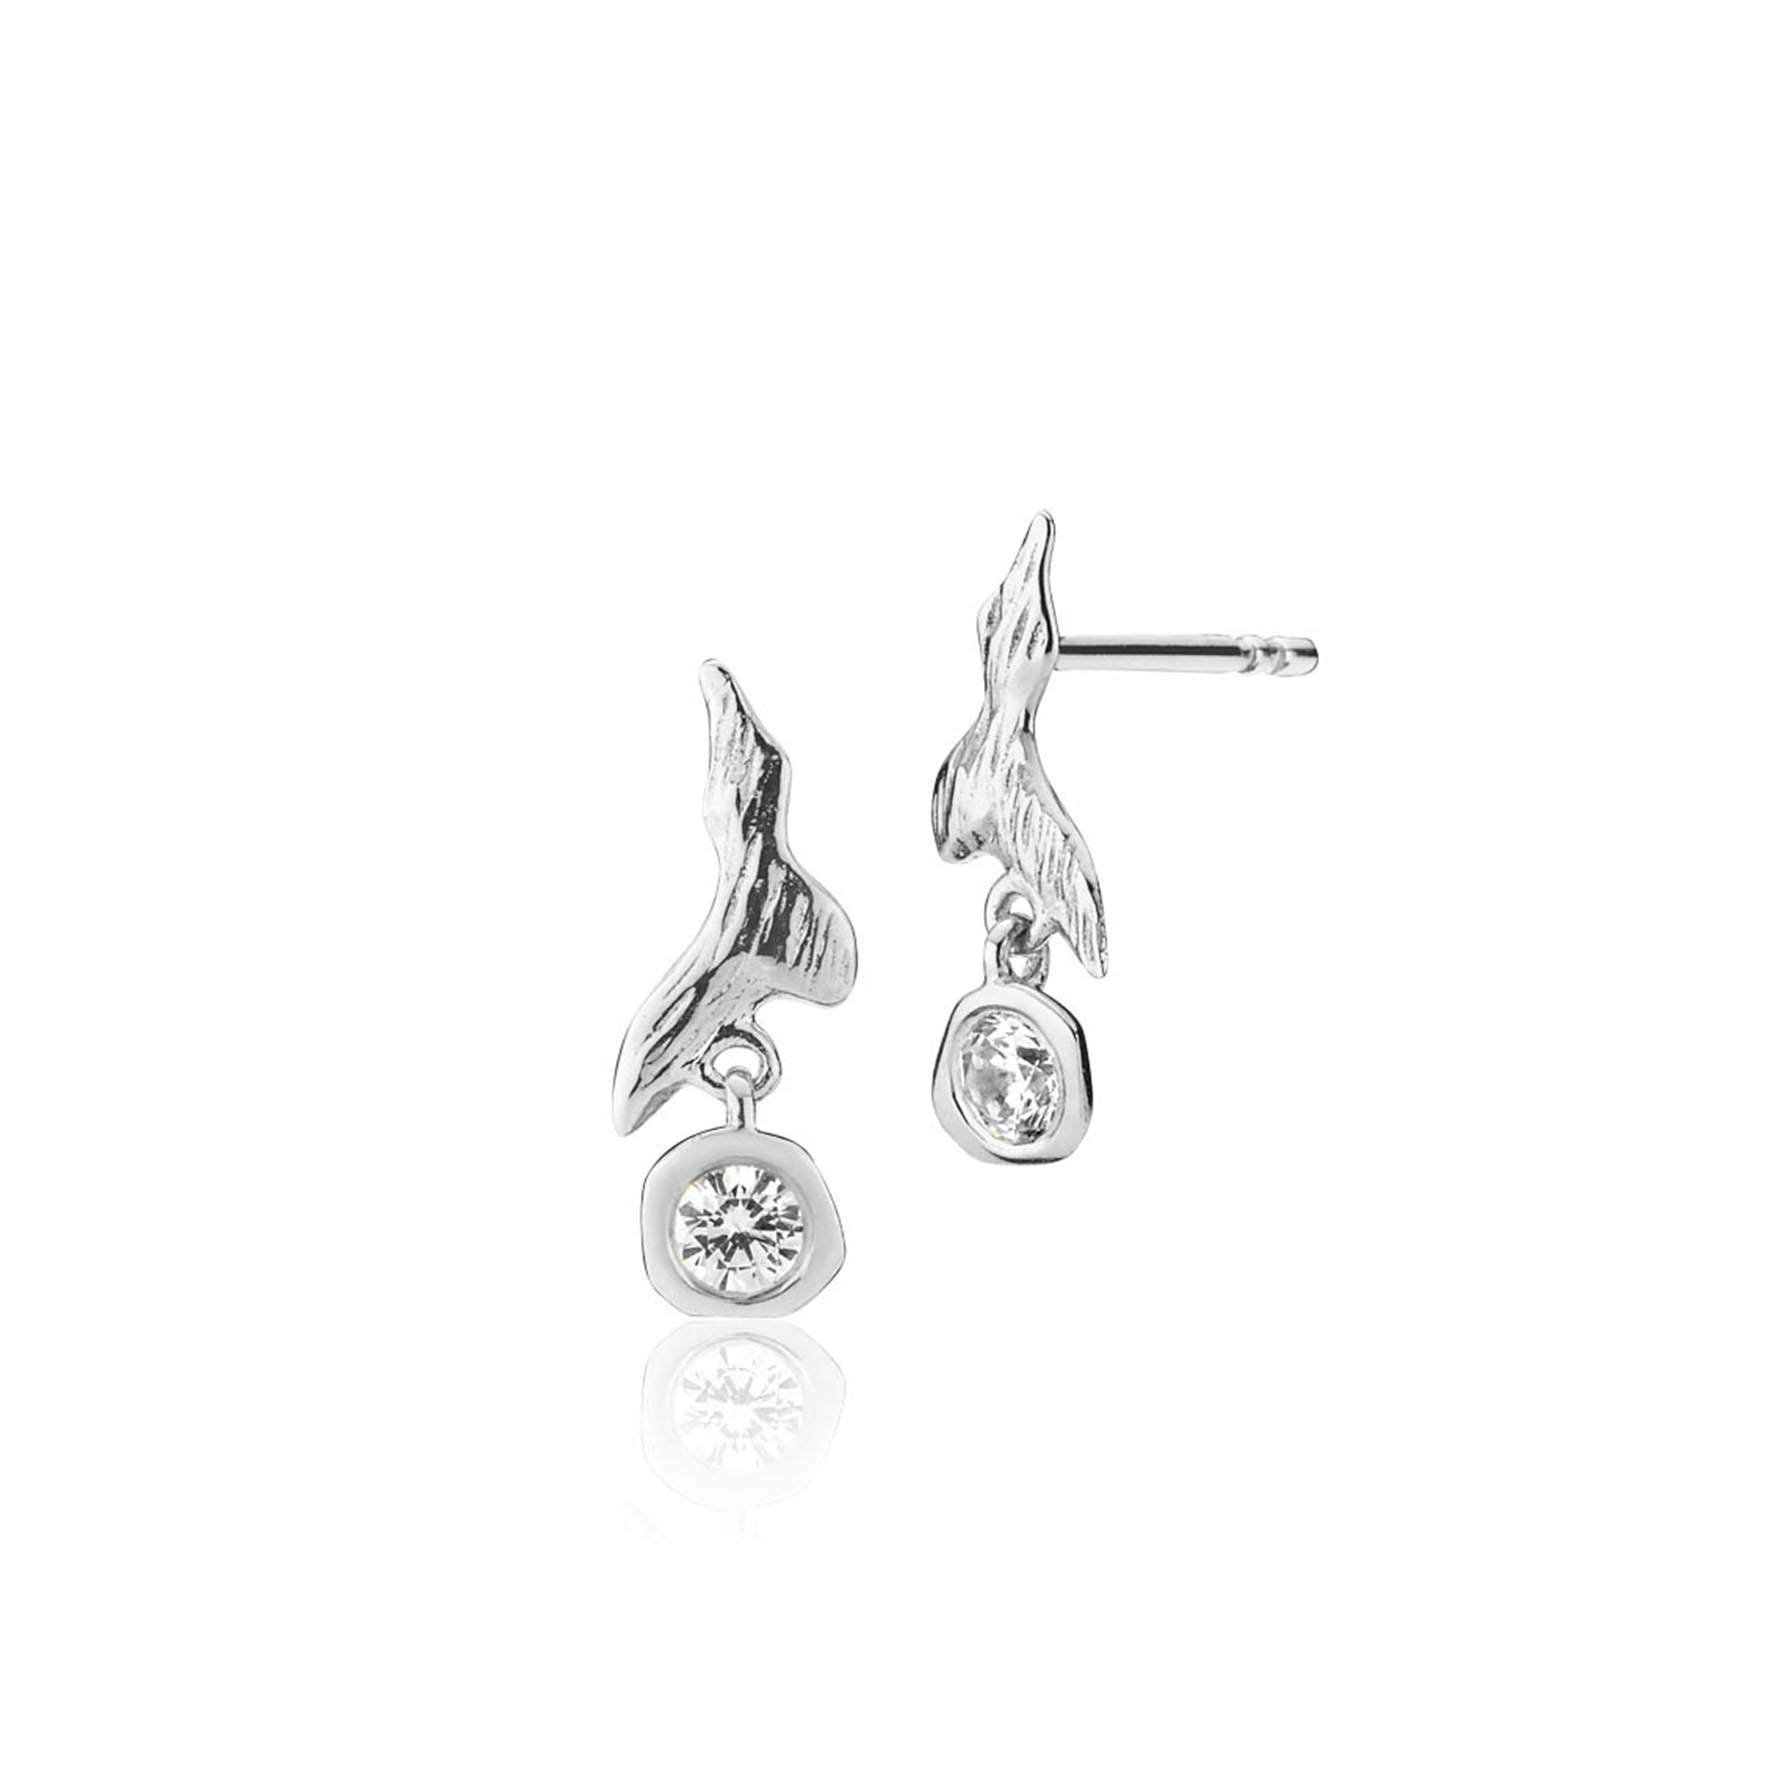 Fairy Earrings With Stone fra Izabel Camille i Sølv Sterling 925